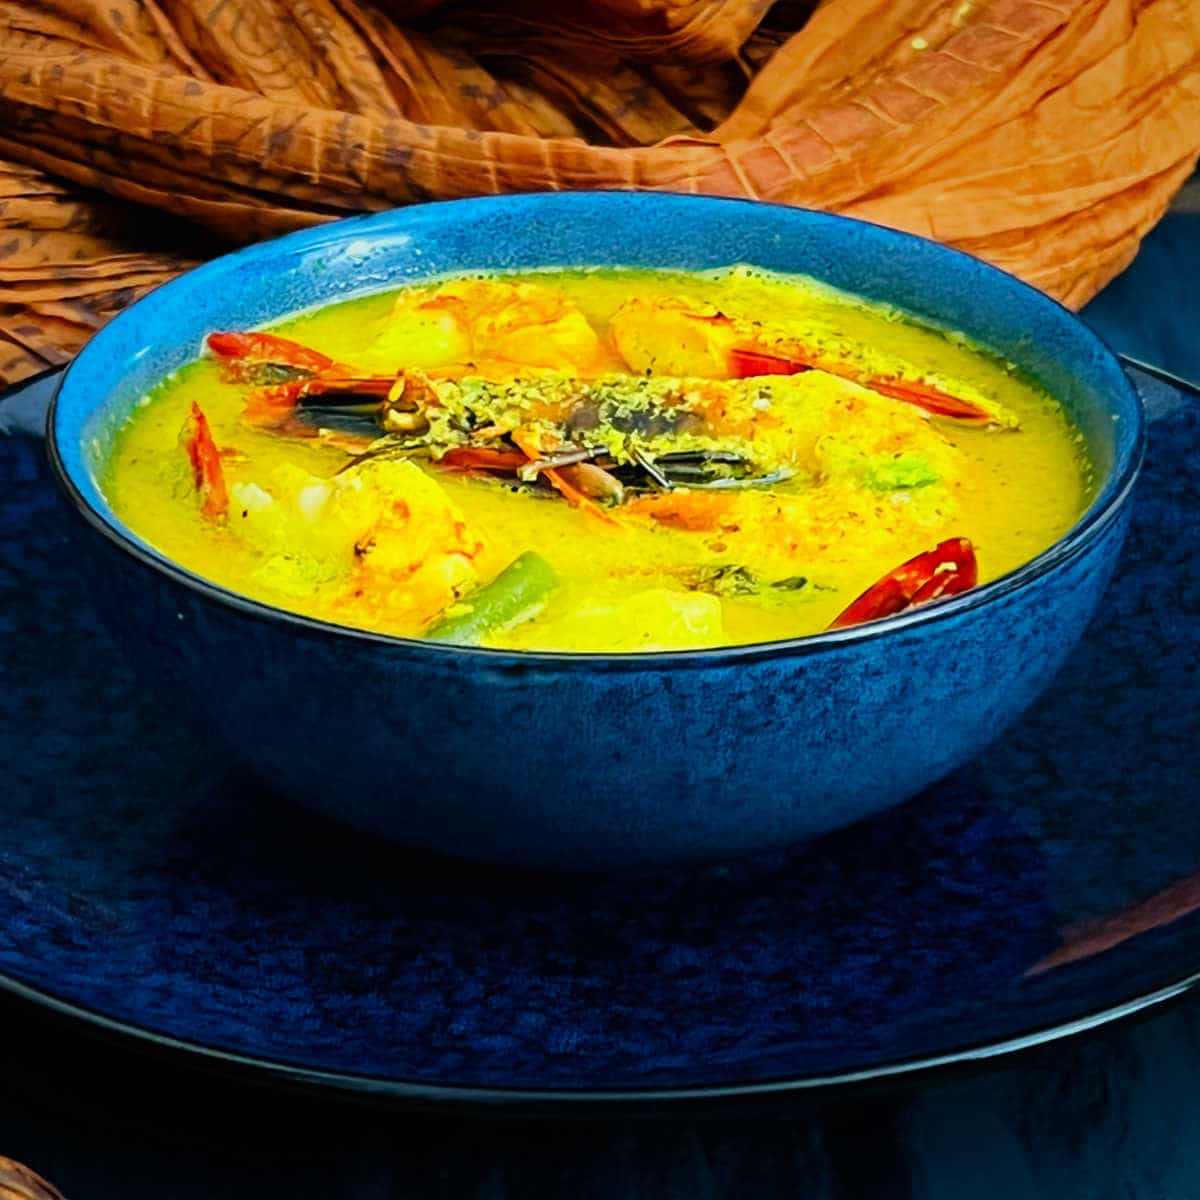 bengali prawn curry sorshe chingri.